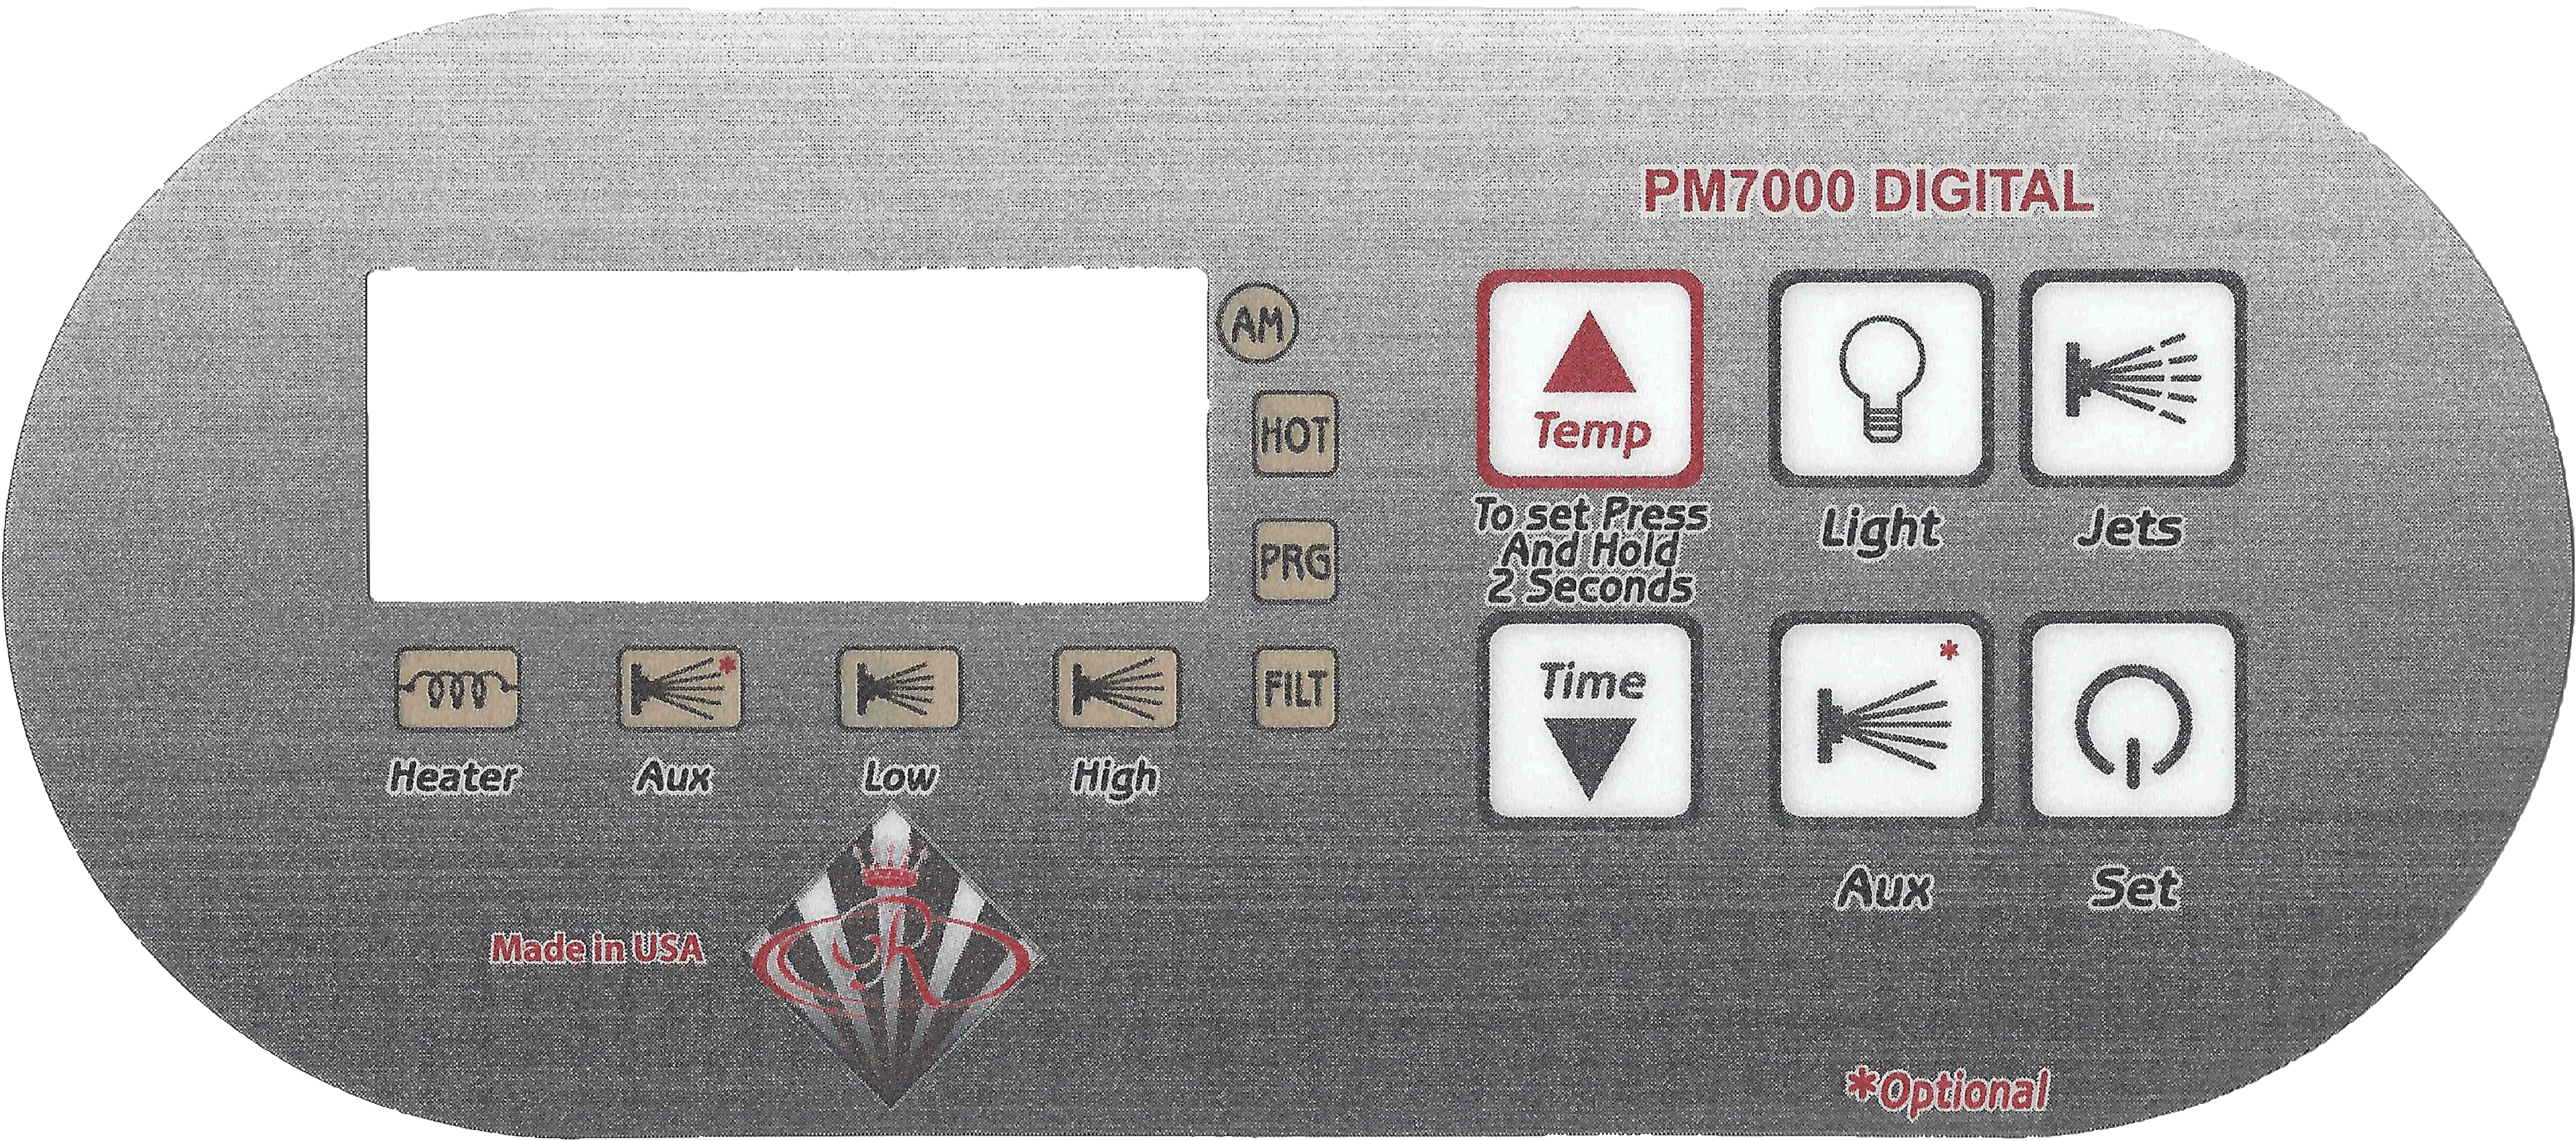 PM7000 Digital Spa Side Control